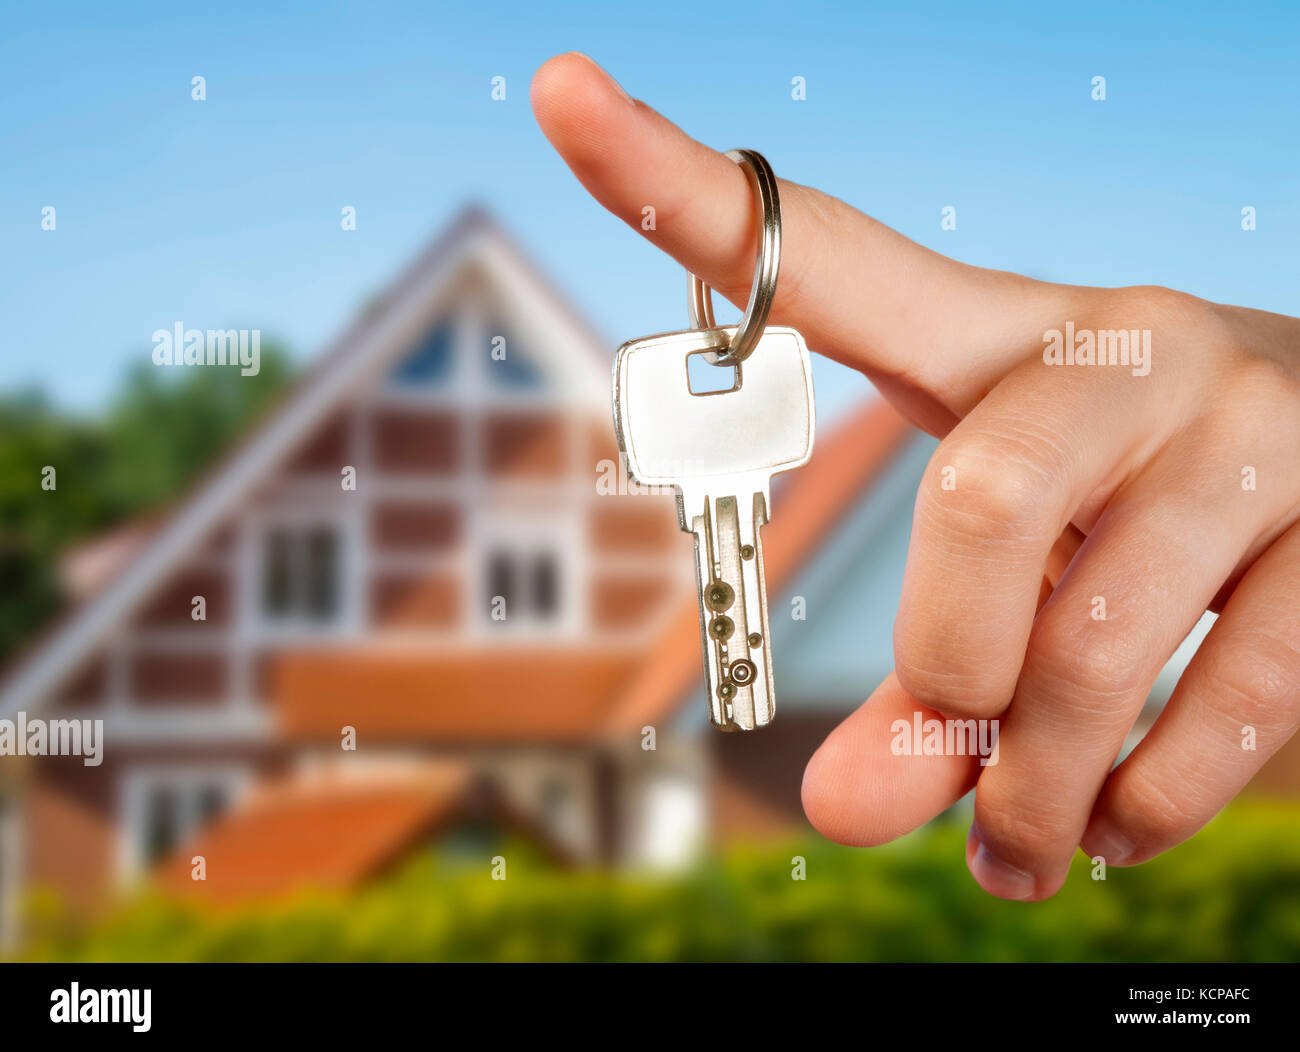 mano sosteniendo una llave de casa